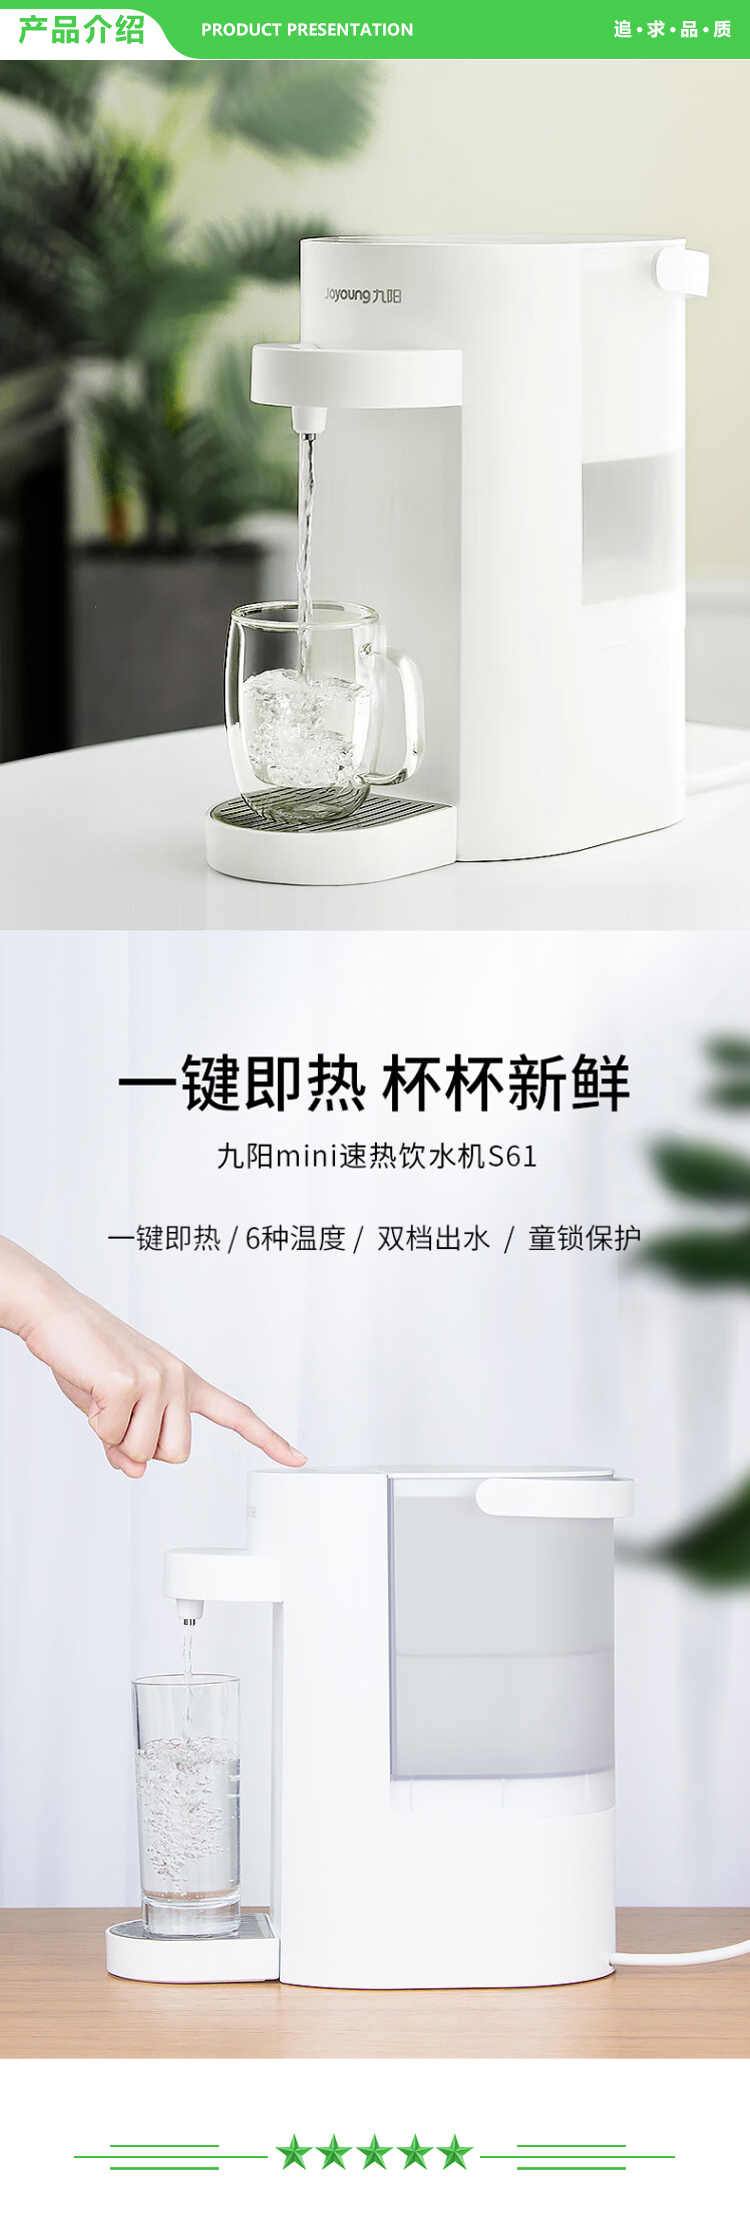 九阳 Joyoung K20-S1 即饮机 即热式电热水瓶全自动智能茶吧饮水机.jpg